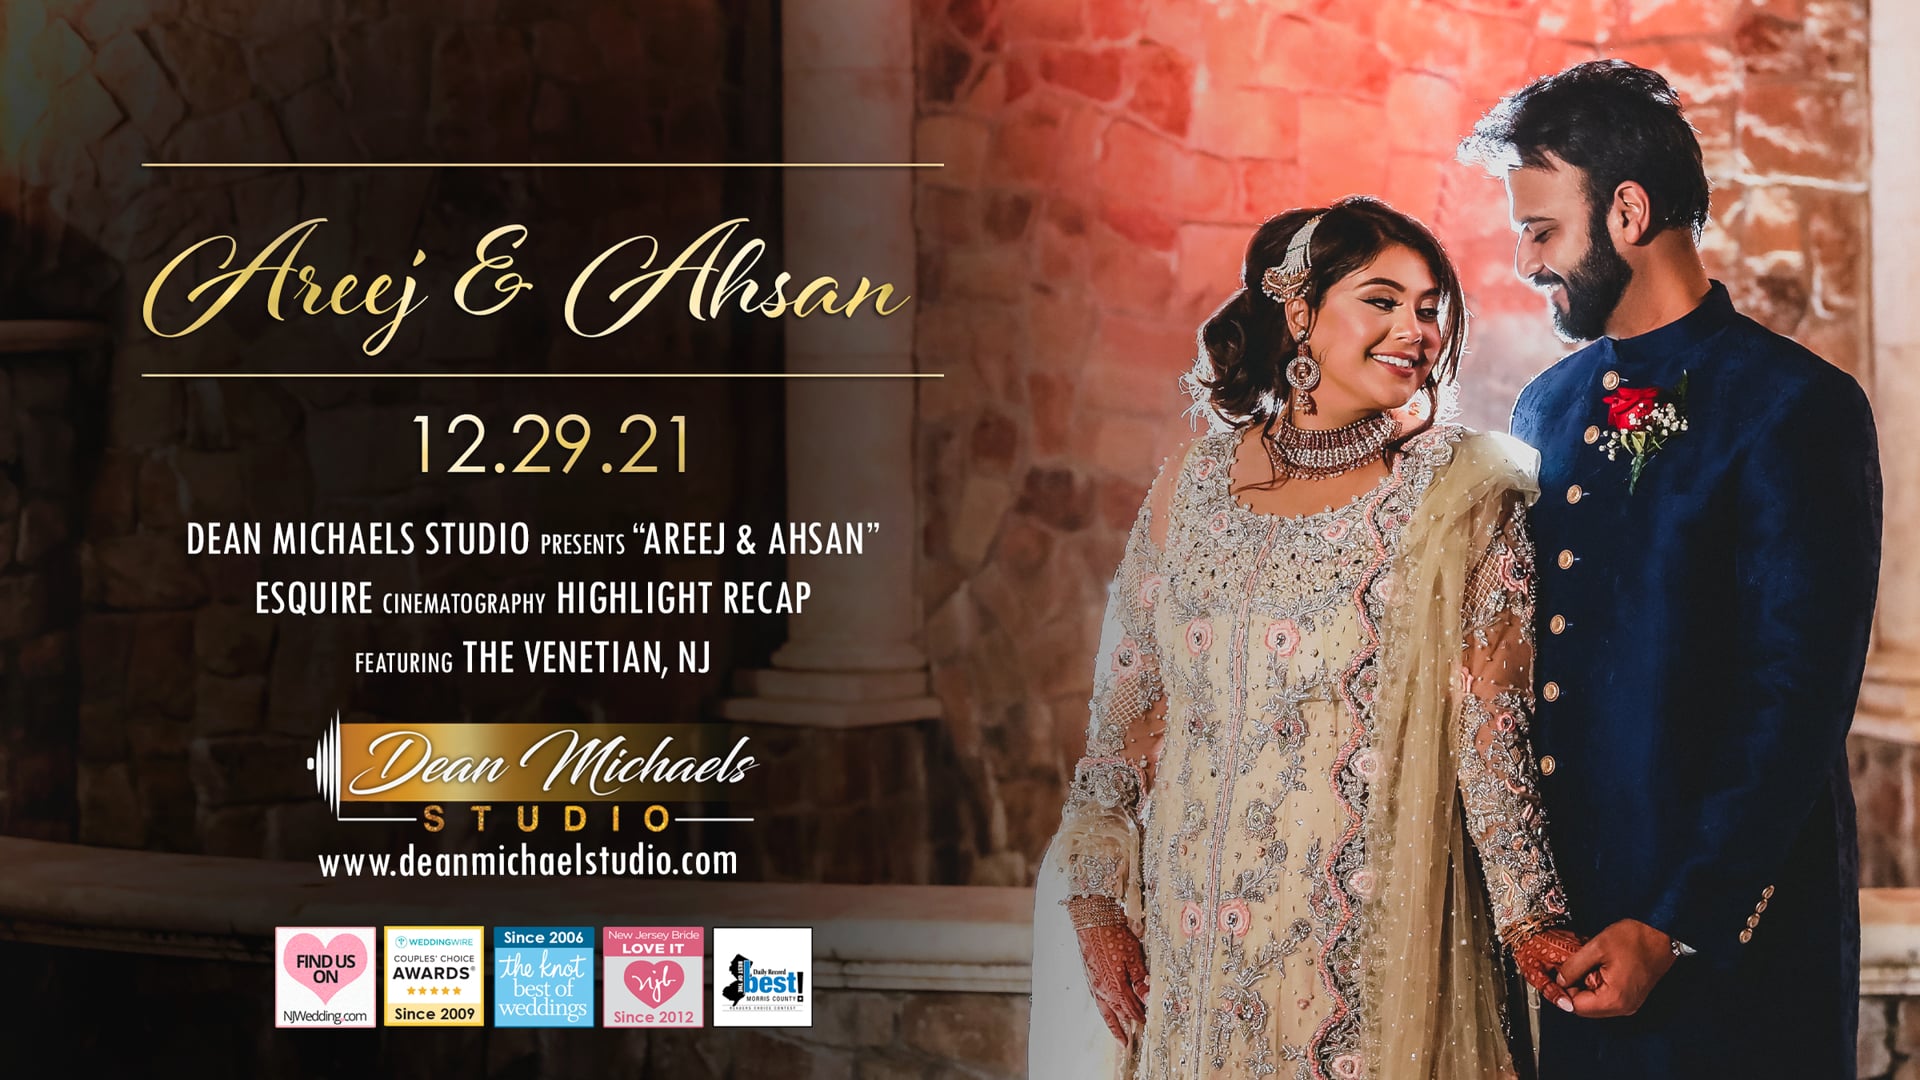 Areej & Ahsan's Wedding Highlight Recap at The Venetian, NJ